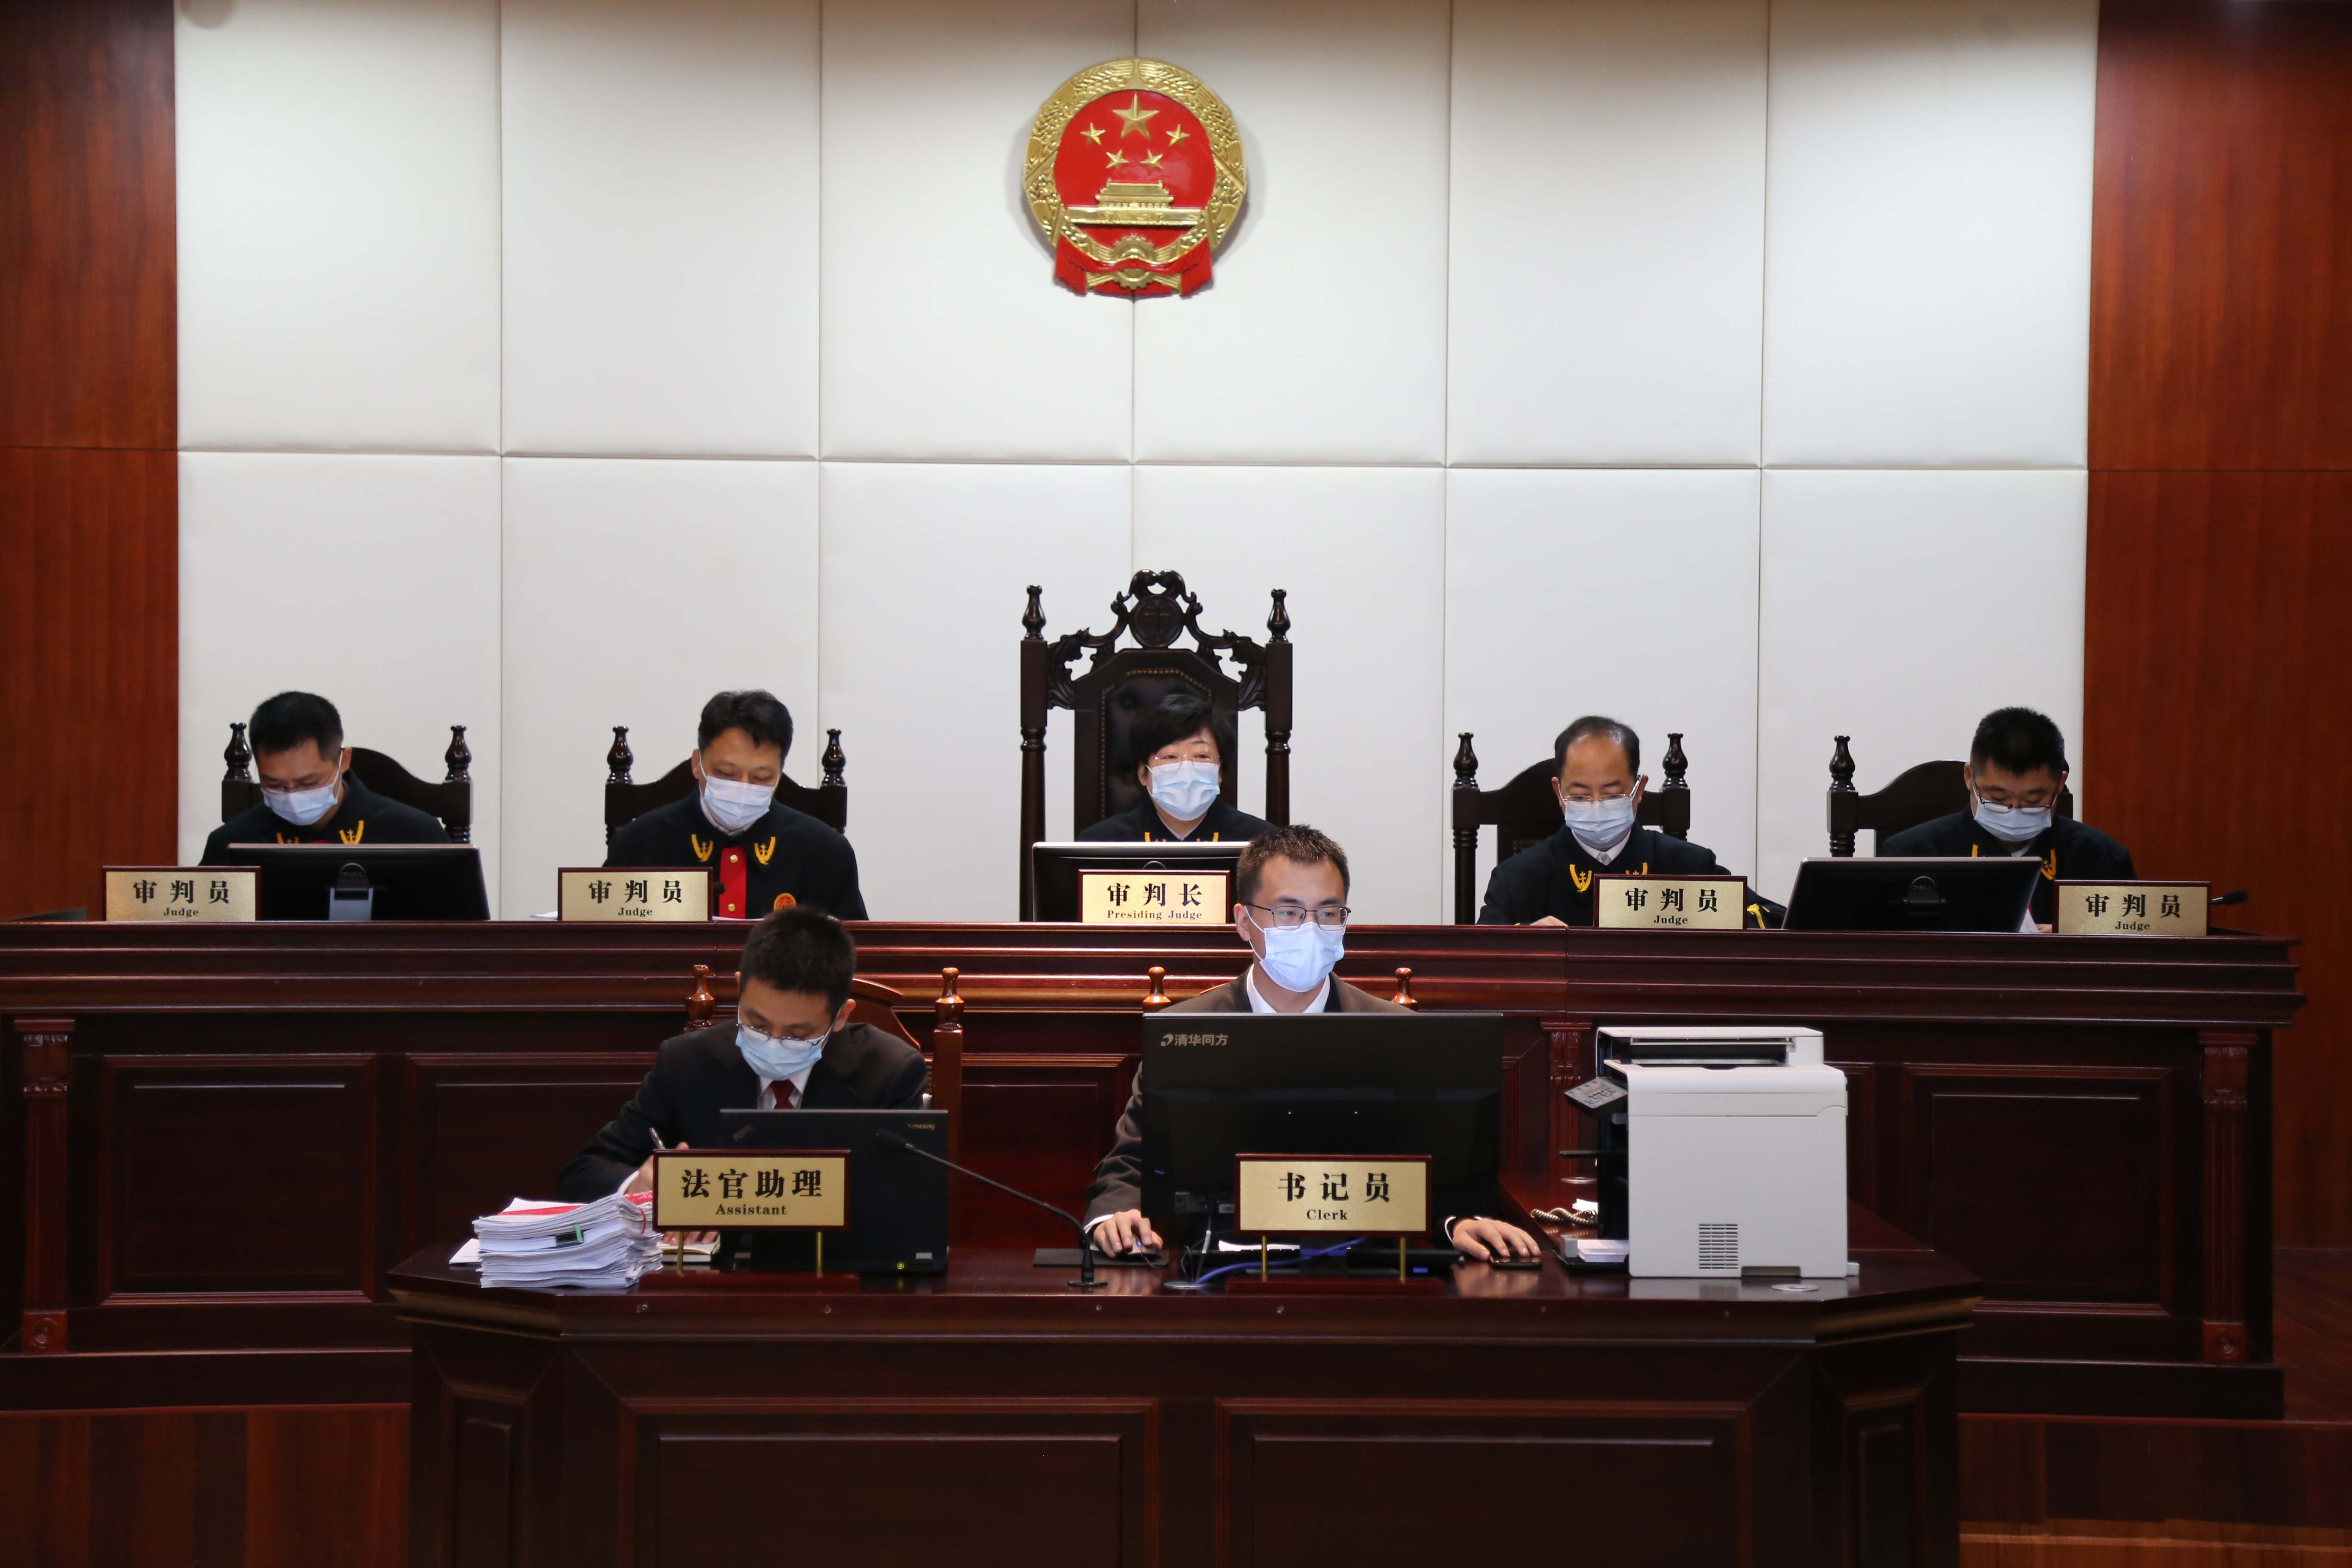 中国庭审公开网